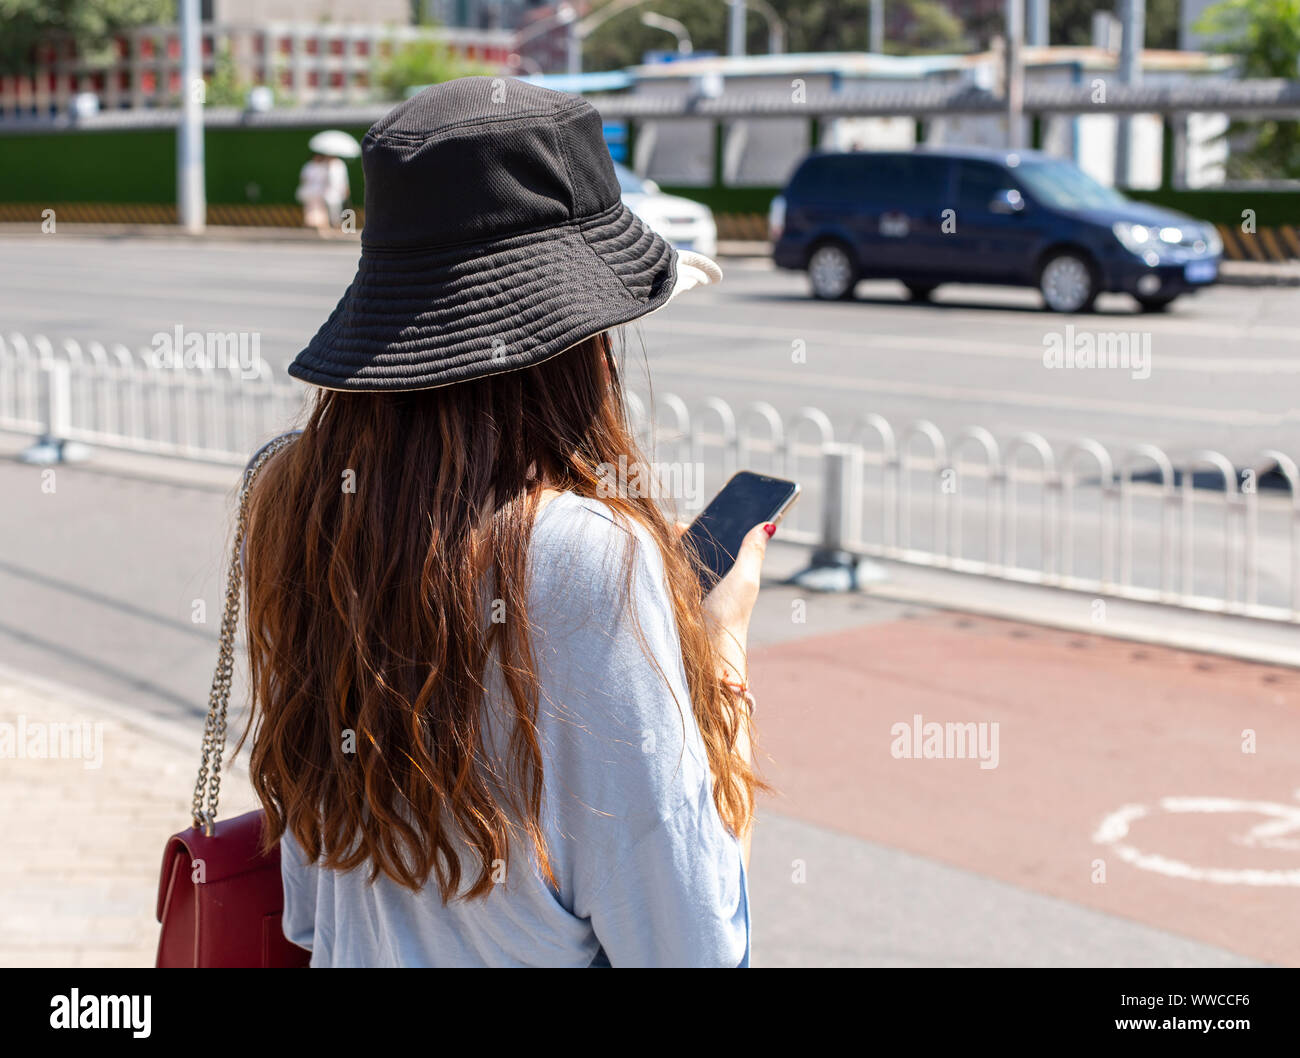 Eine chinesische Frau in einem Sonnenhut steht auf Bürgersteig und hält ein Smartphone. Portrait Foto von hinten, das Gesicht ist nicht sichtbar und der Hintergrund ist unscharf Stockfoto